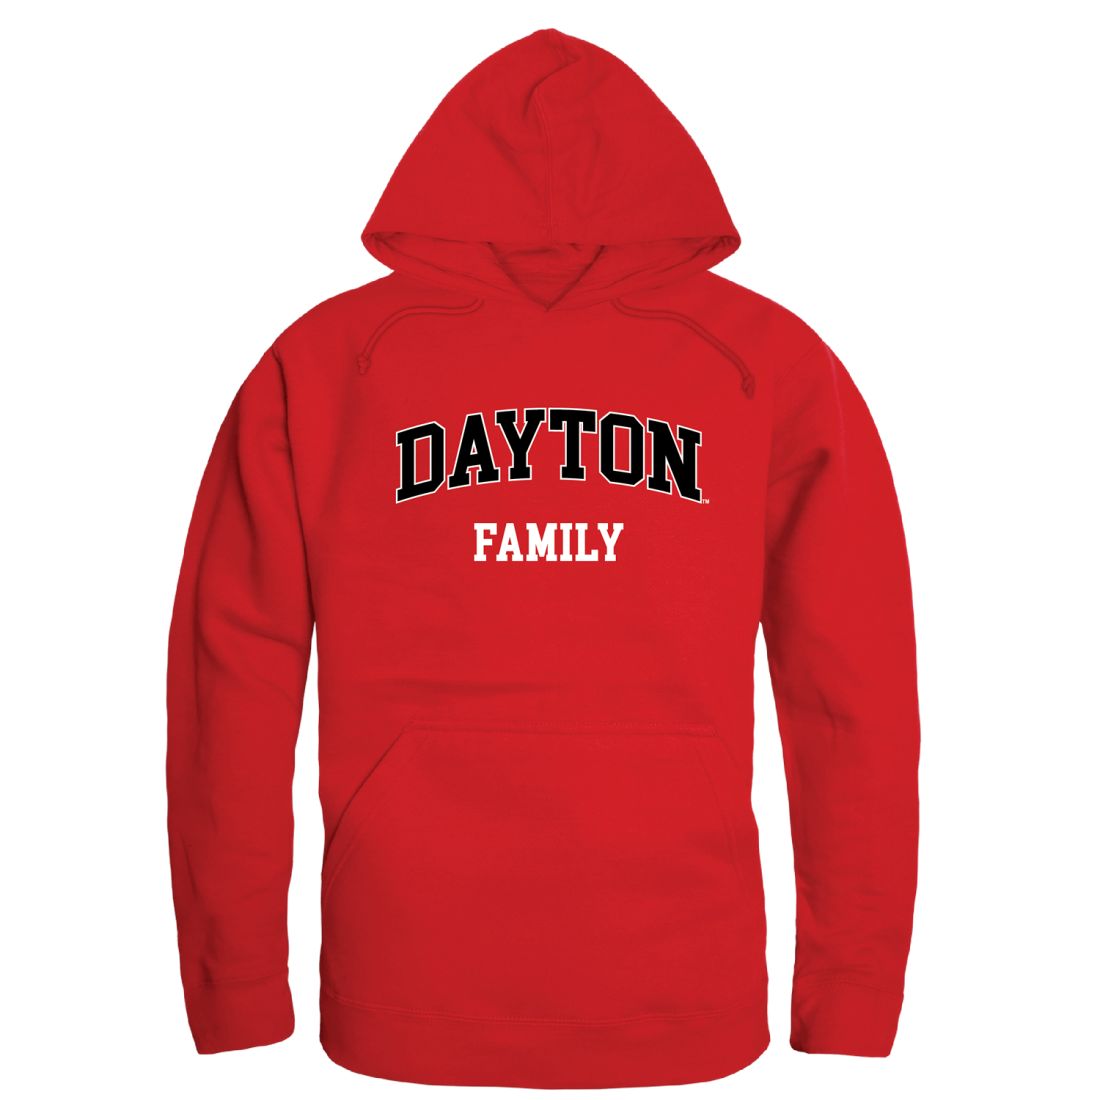 UD University of Dayton Flyers Family Hoodie Sweatshirts